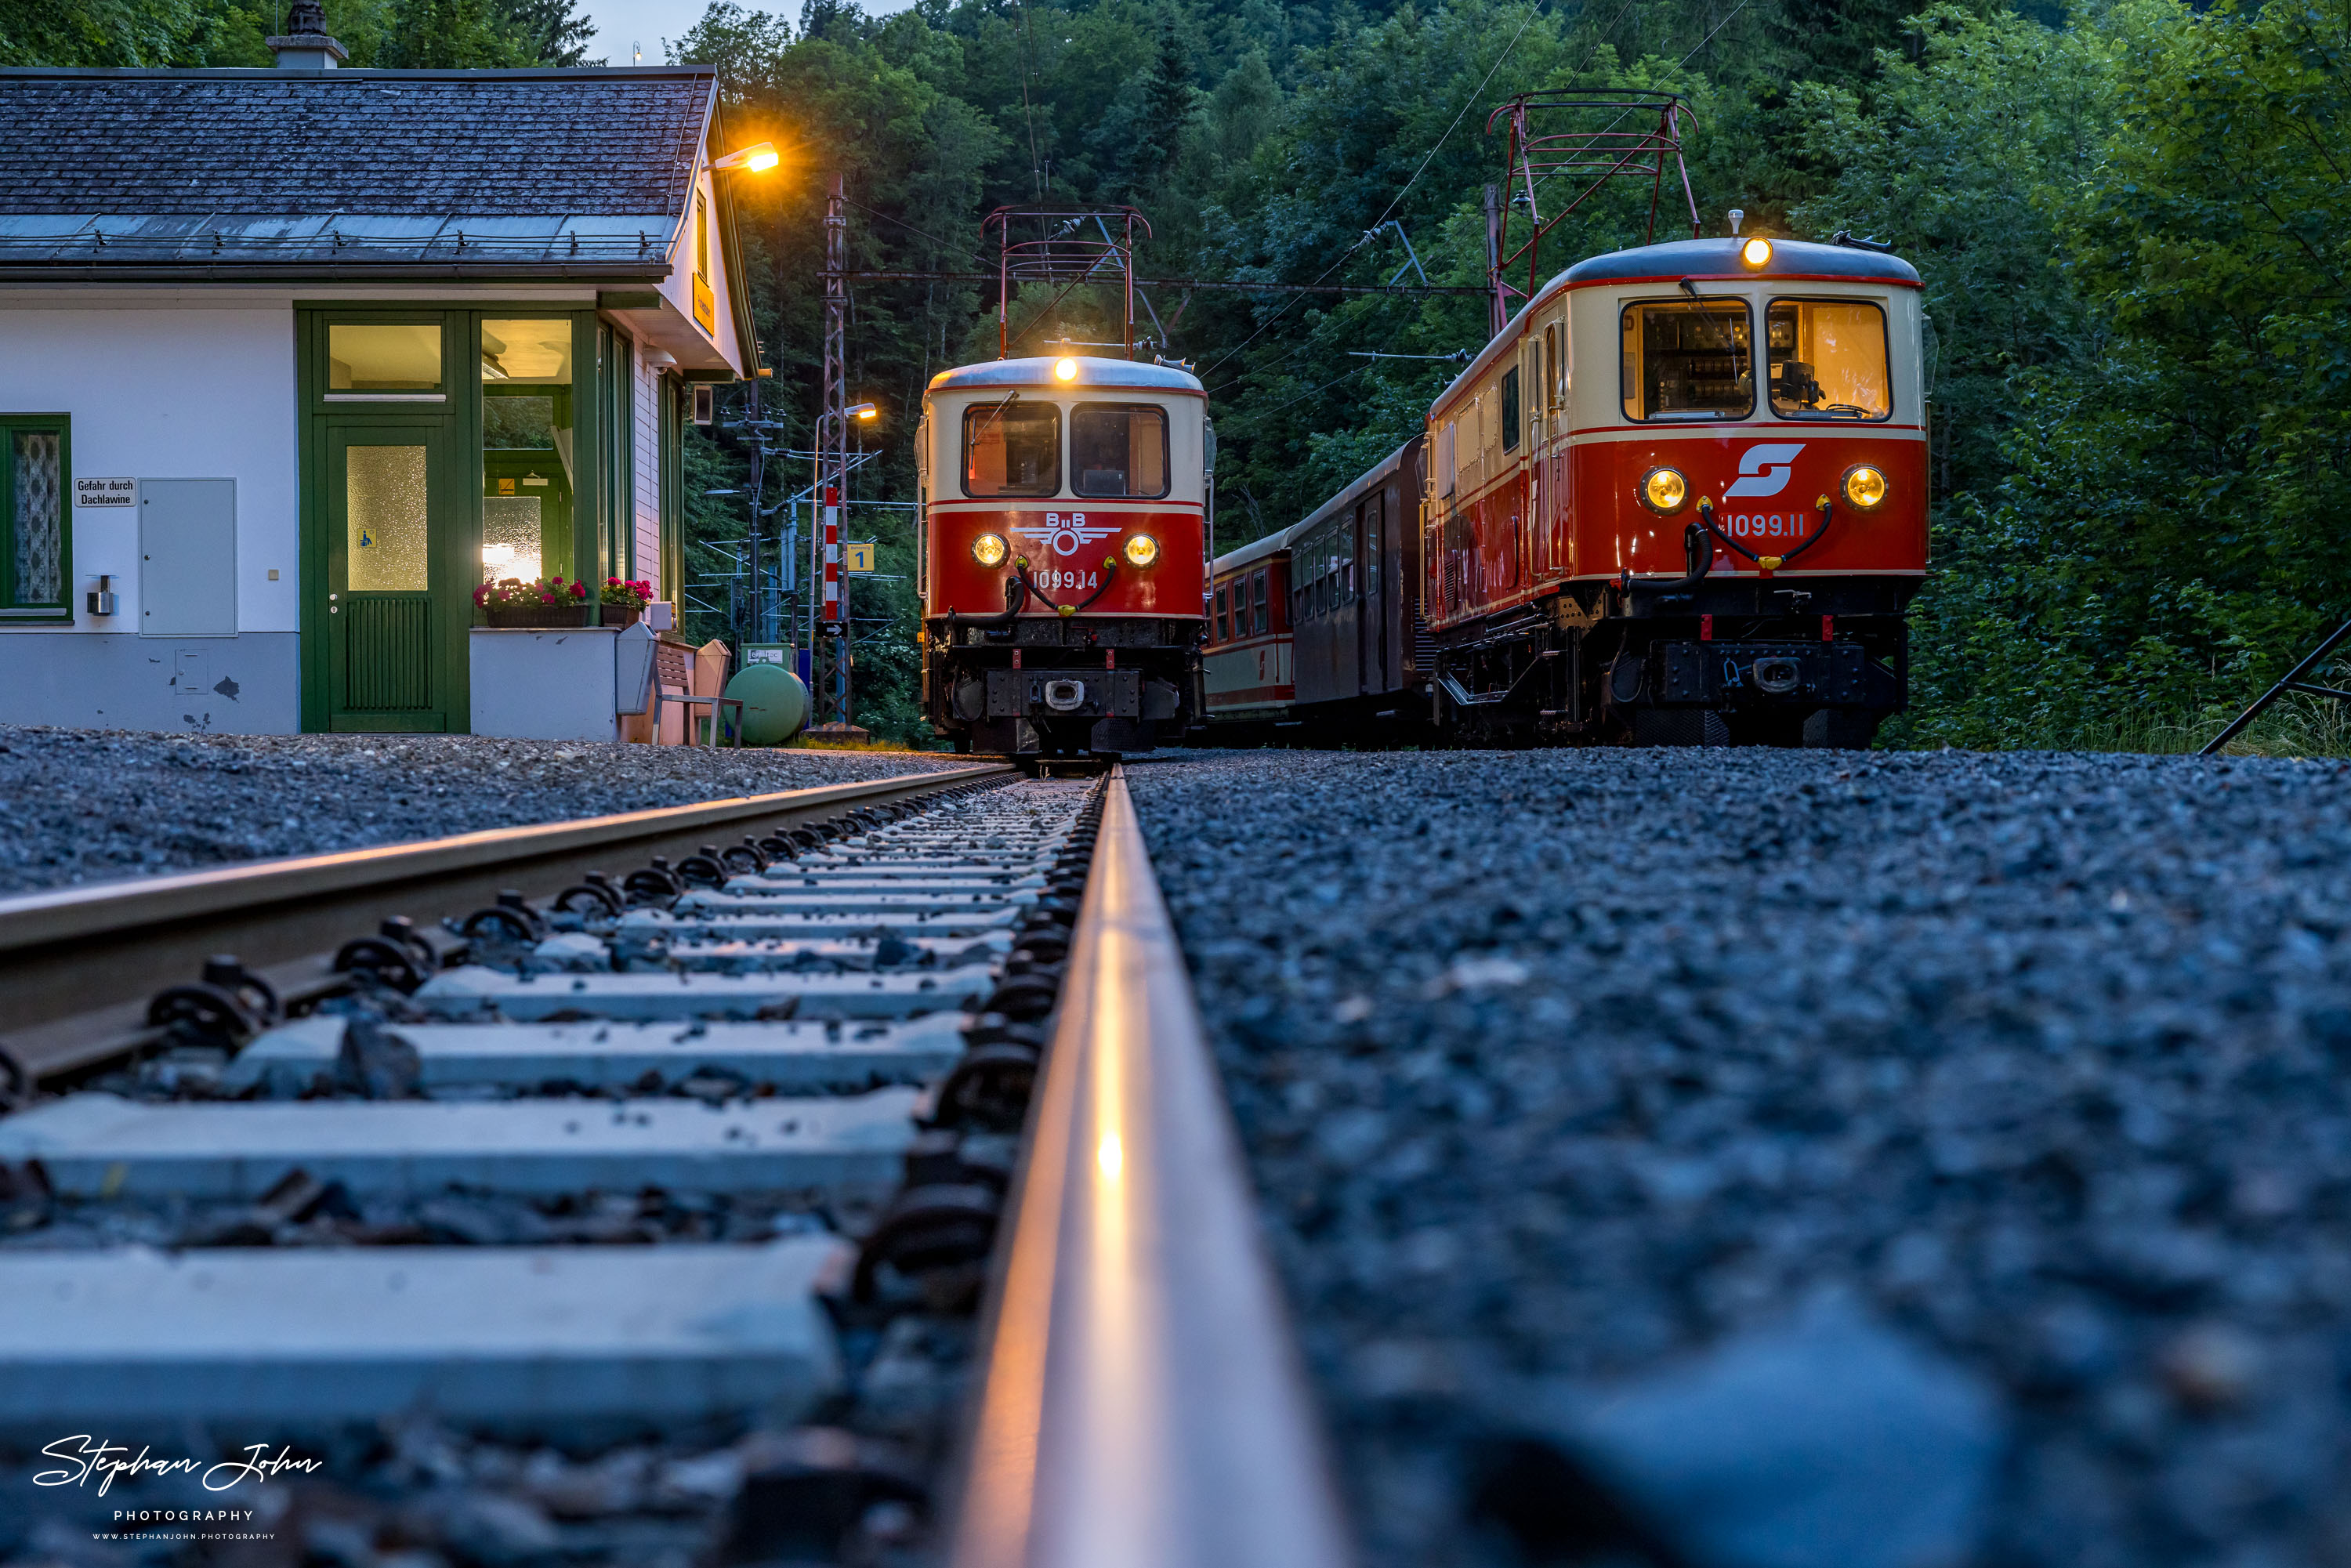 Zug 80967 ist im Bahnhof Puchenstuben angekommen und wendet auf Zug 80968. Dabei rangieren die Loks 1099.11 und 1099.14 die einzelnen Zugteile um.